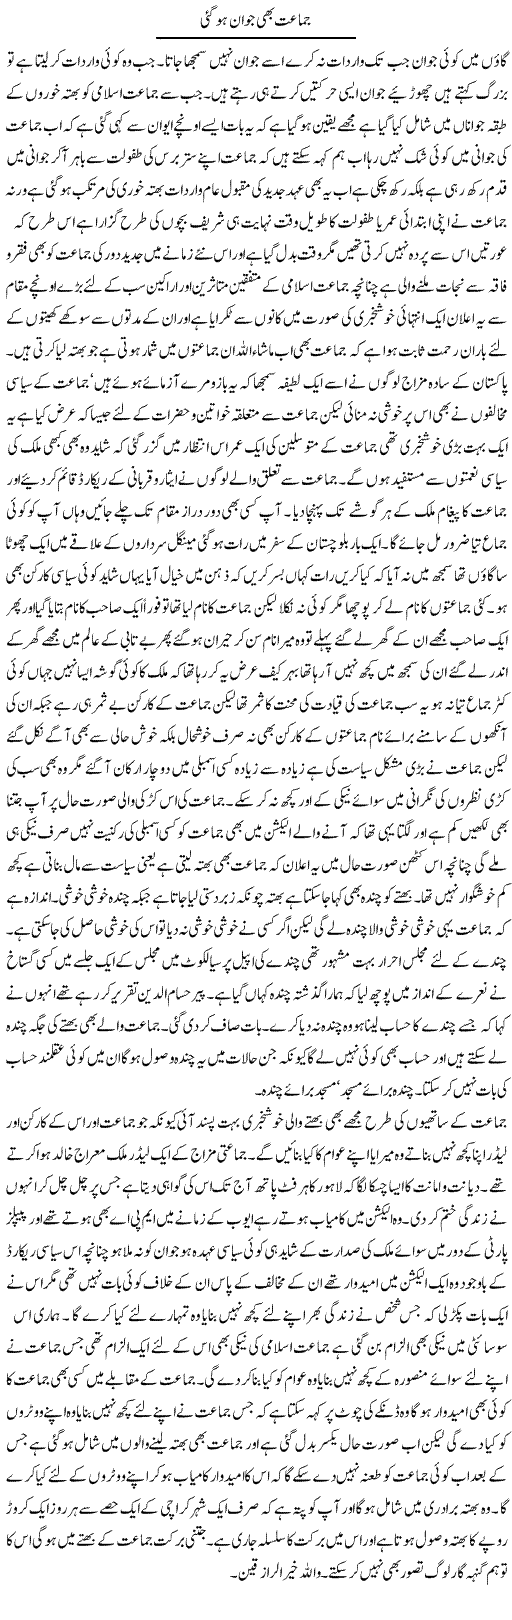 Jamaat e Islami Express Column Abdul Qadir 12 October 2011